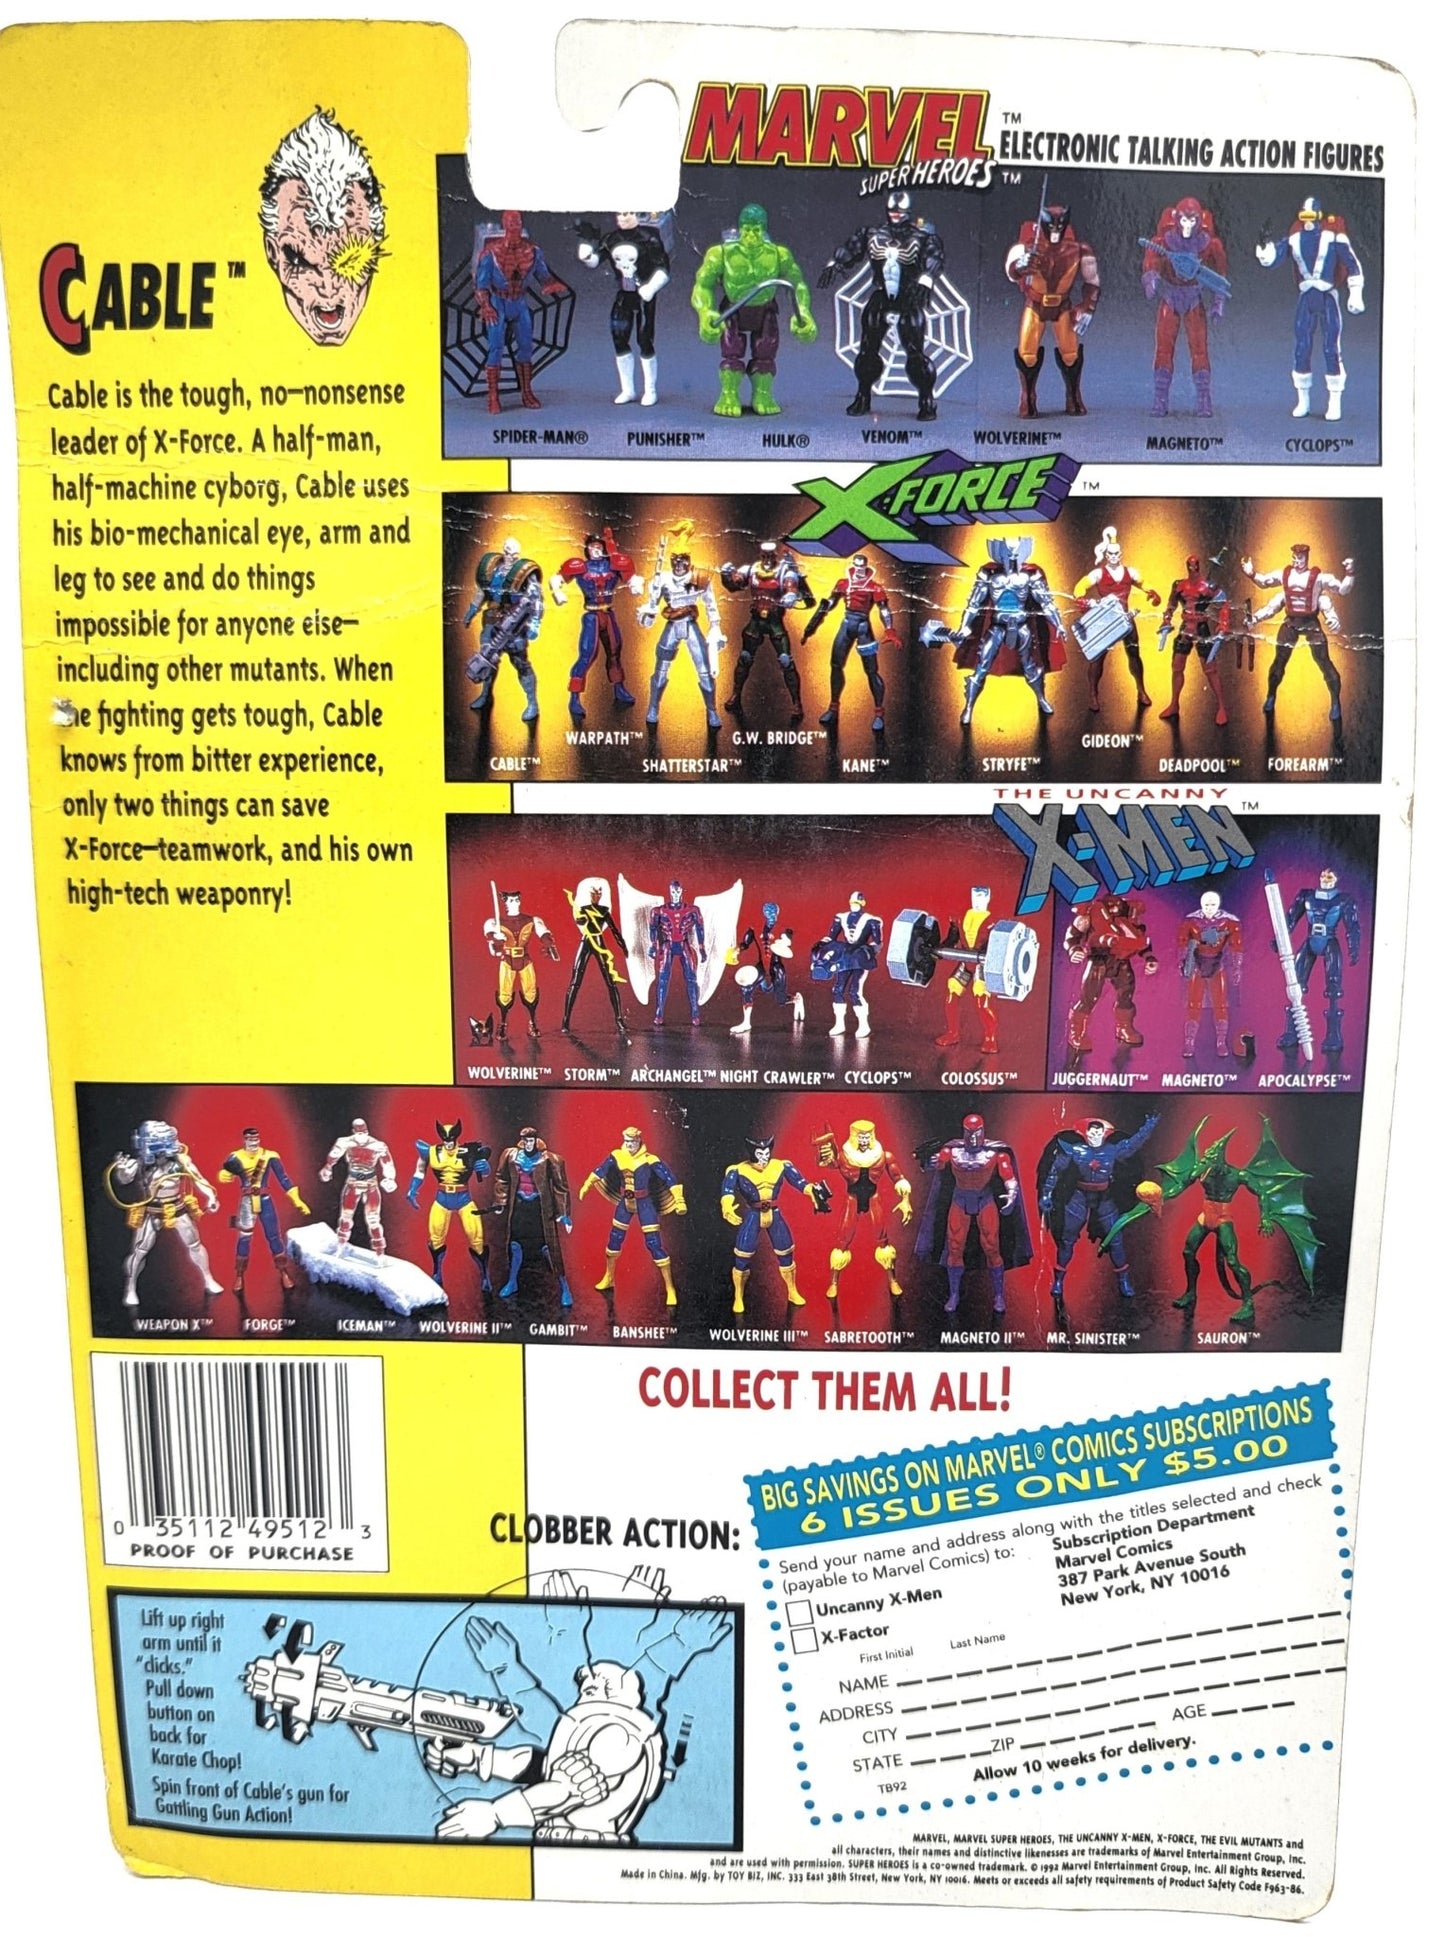 Toy Biz - Toy Biz | The Uncanny X-Men X- Force Cable 1992 | Vintage Marvel Action Figure - Action Figures - Steady Bunny Shop